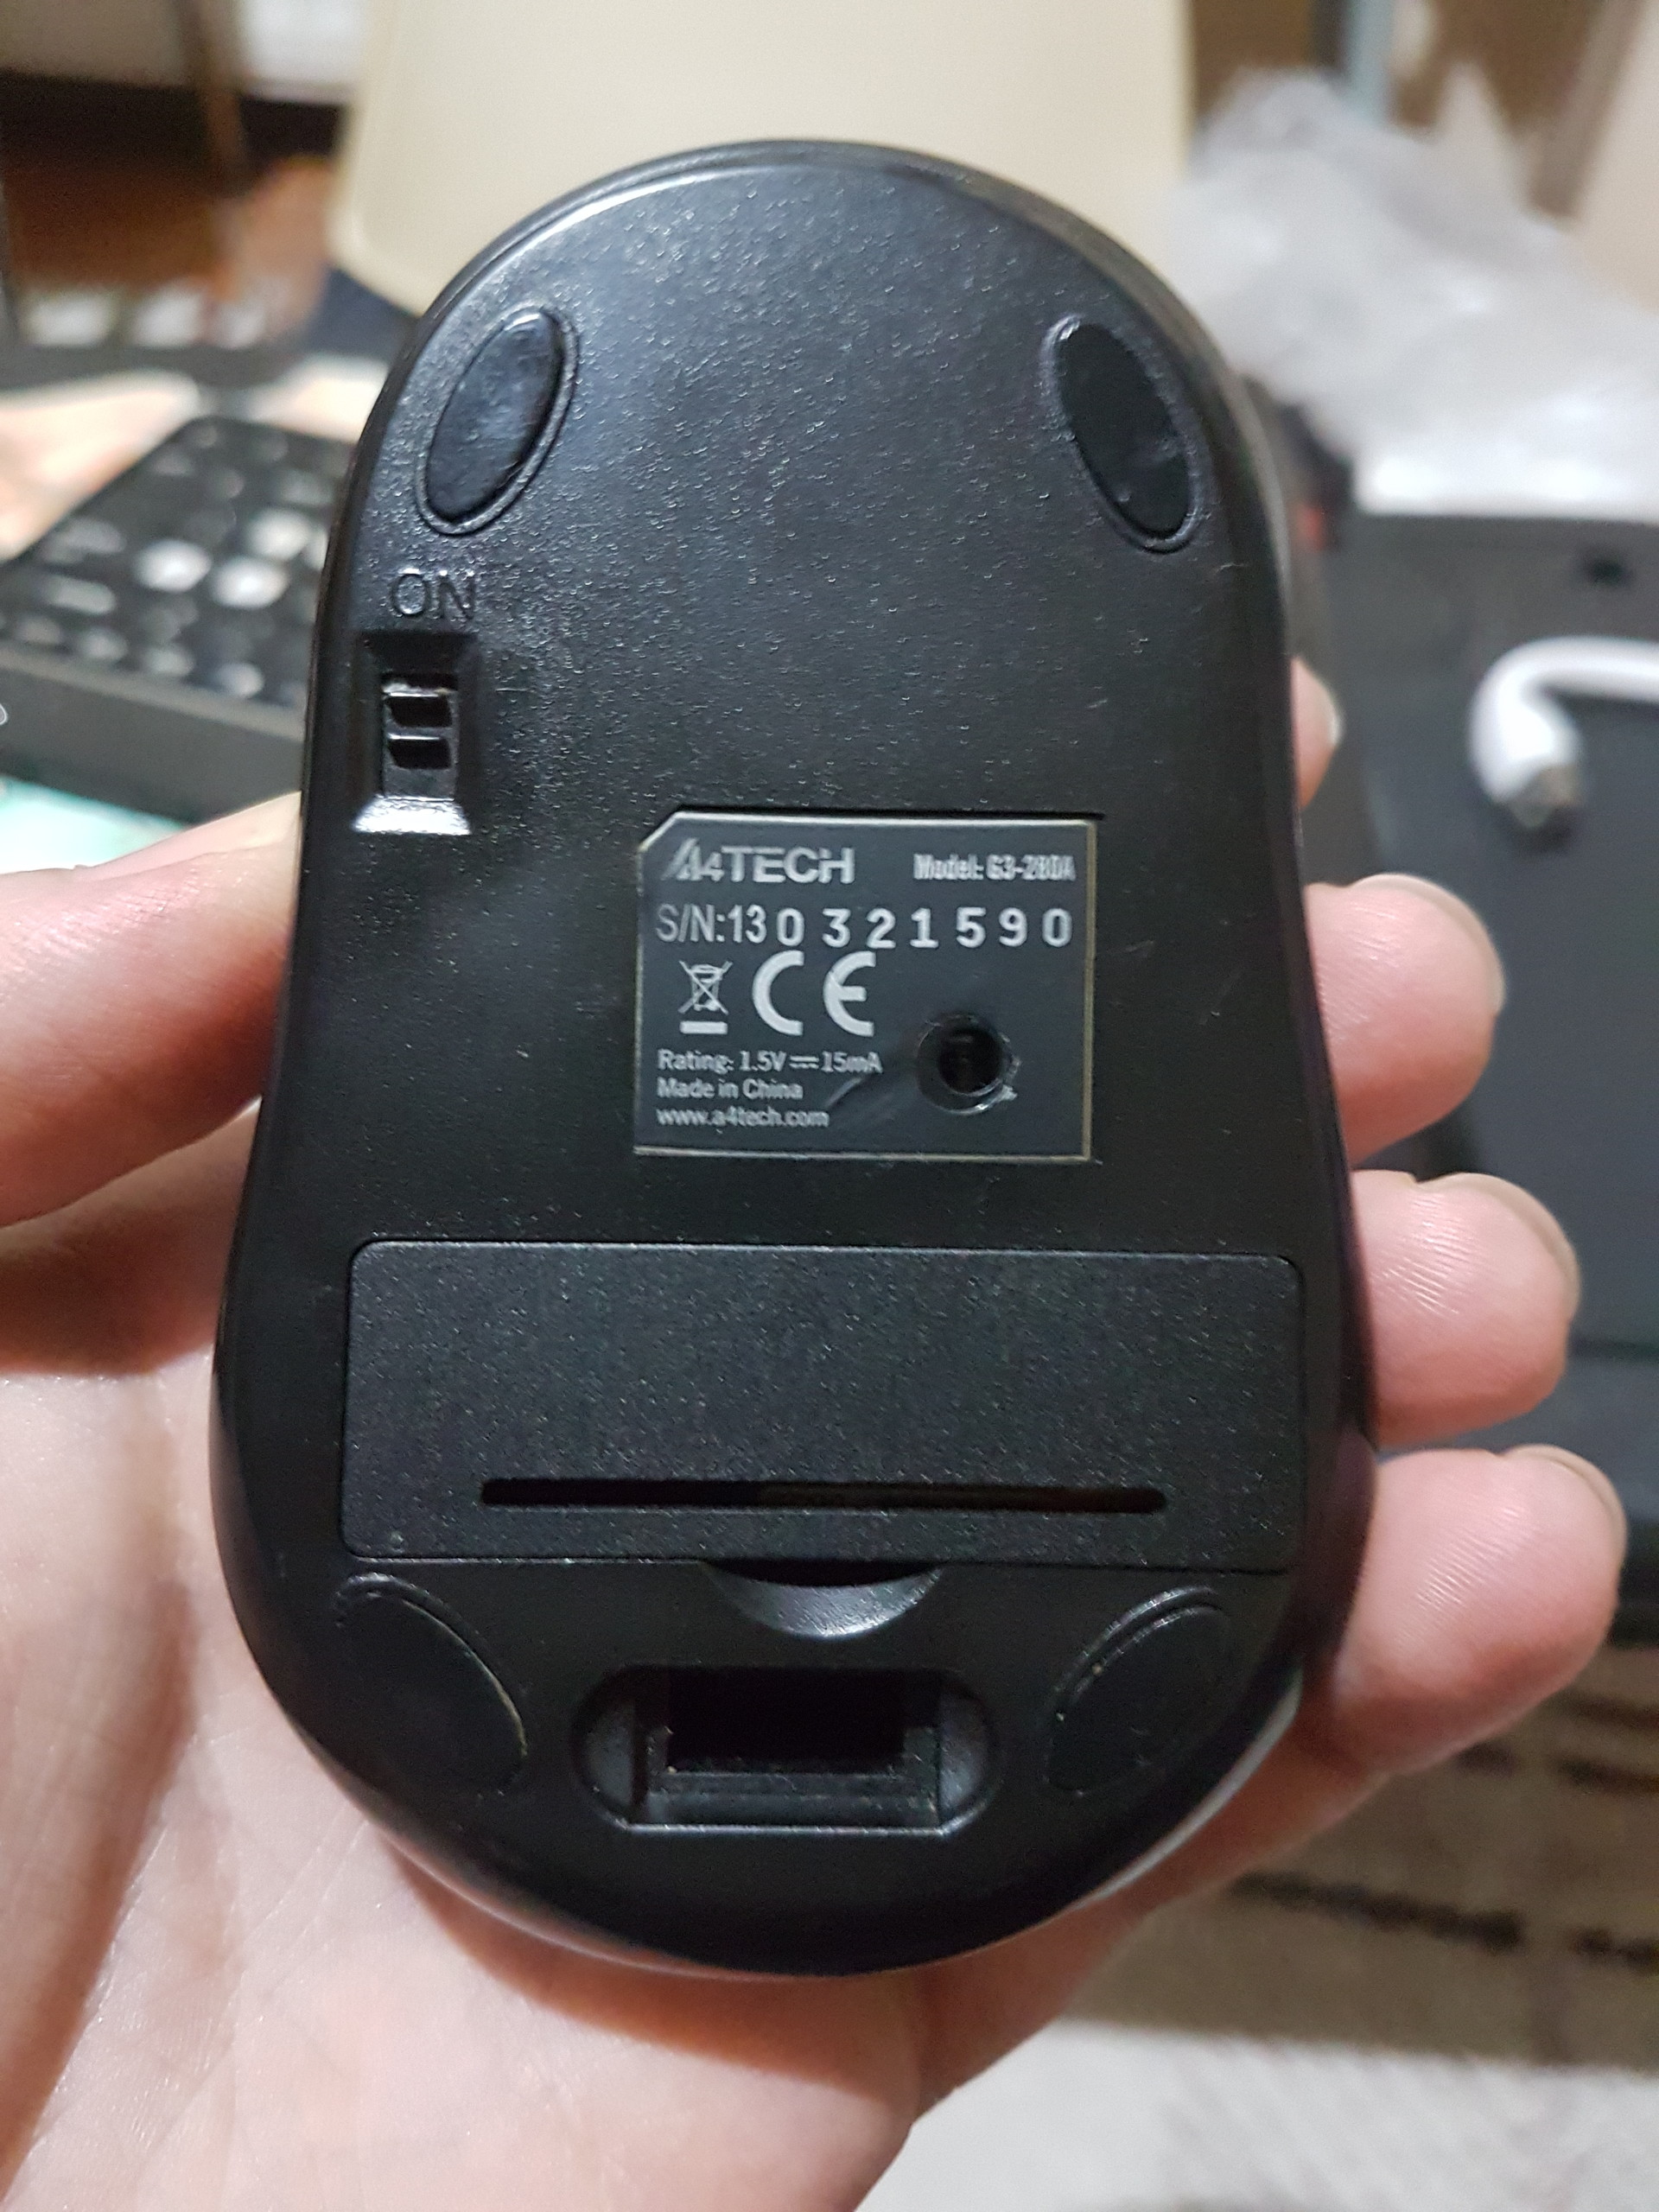  A4TECH G3-200N Mouse İnceleme